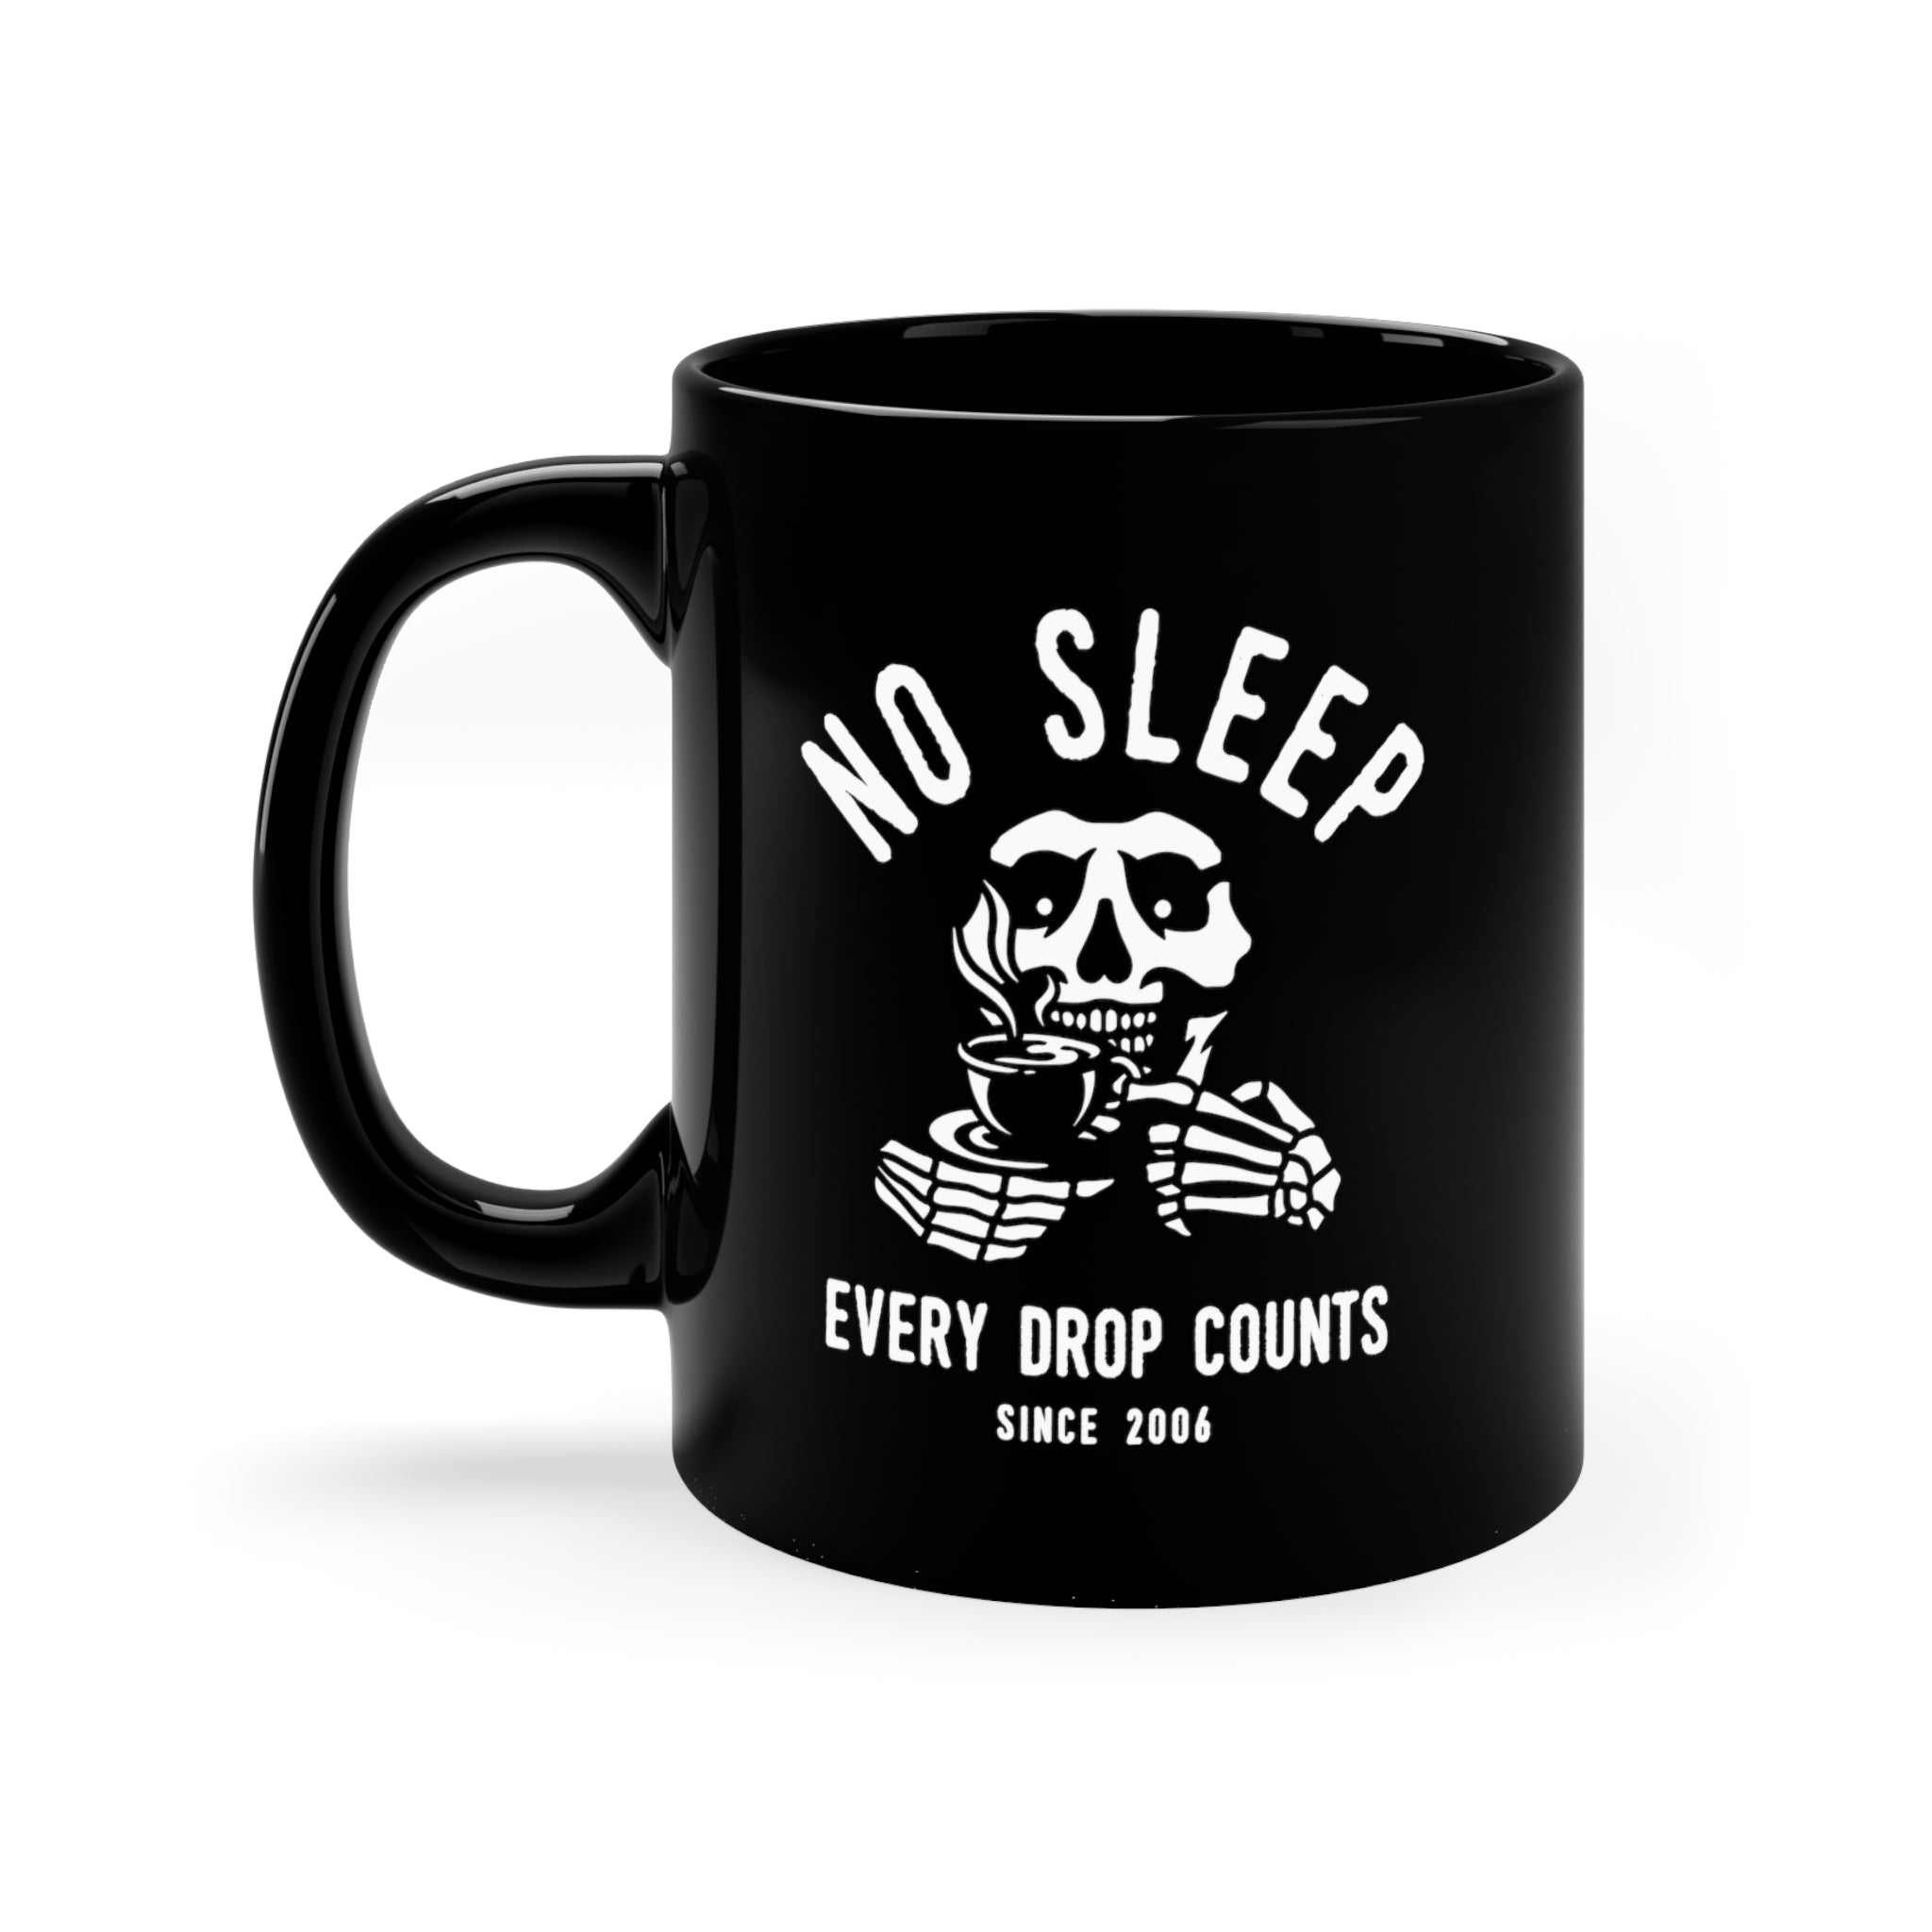 Every Drop Counts Coffee Mug